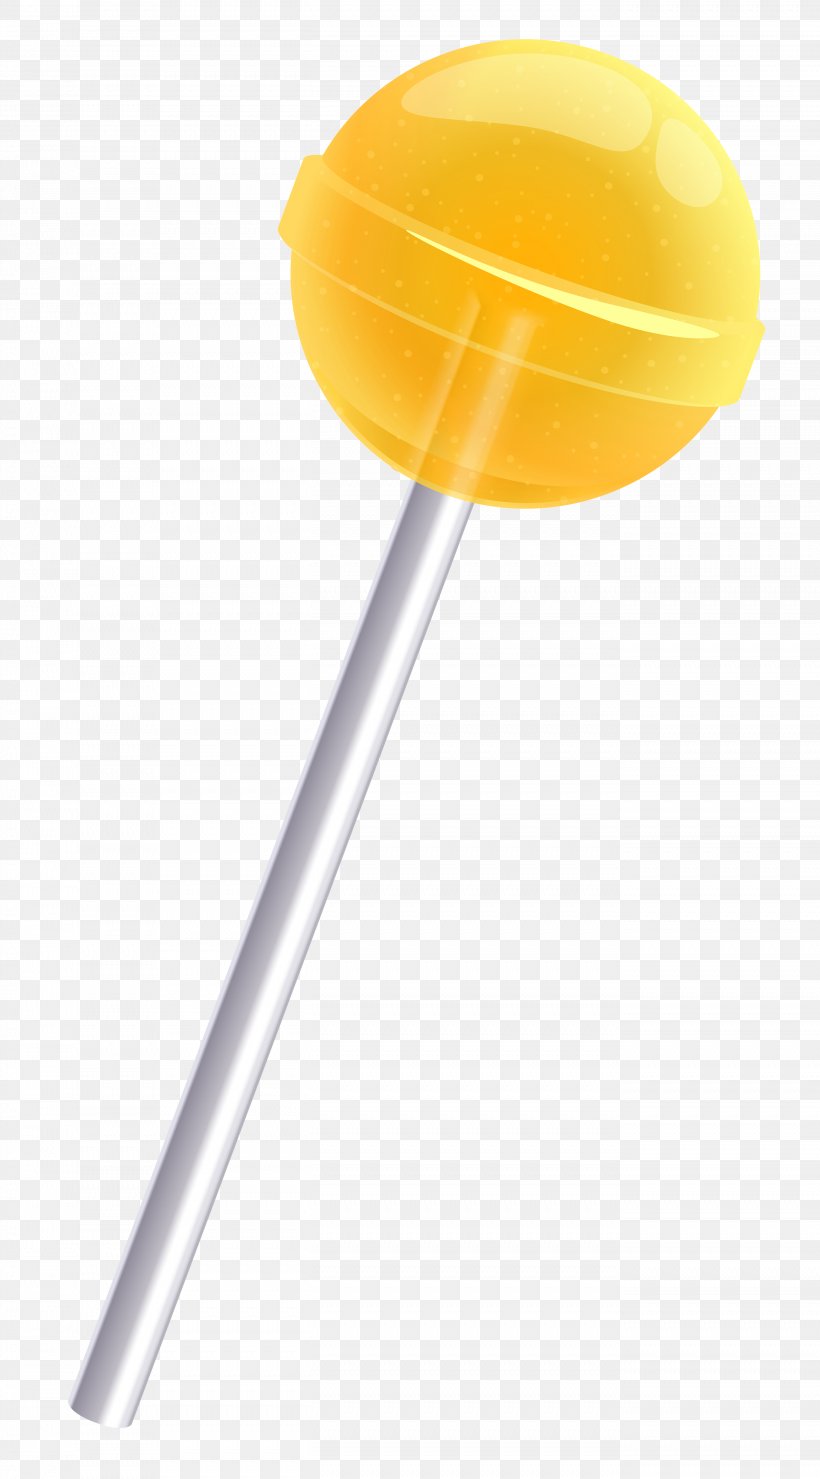 Lollipop Lemon Candy Cane Clip Art, PNG, 2706x4882px, Lollipop, Candy, Candy Cane, Caramel, Chocolate Download Free